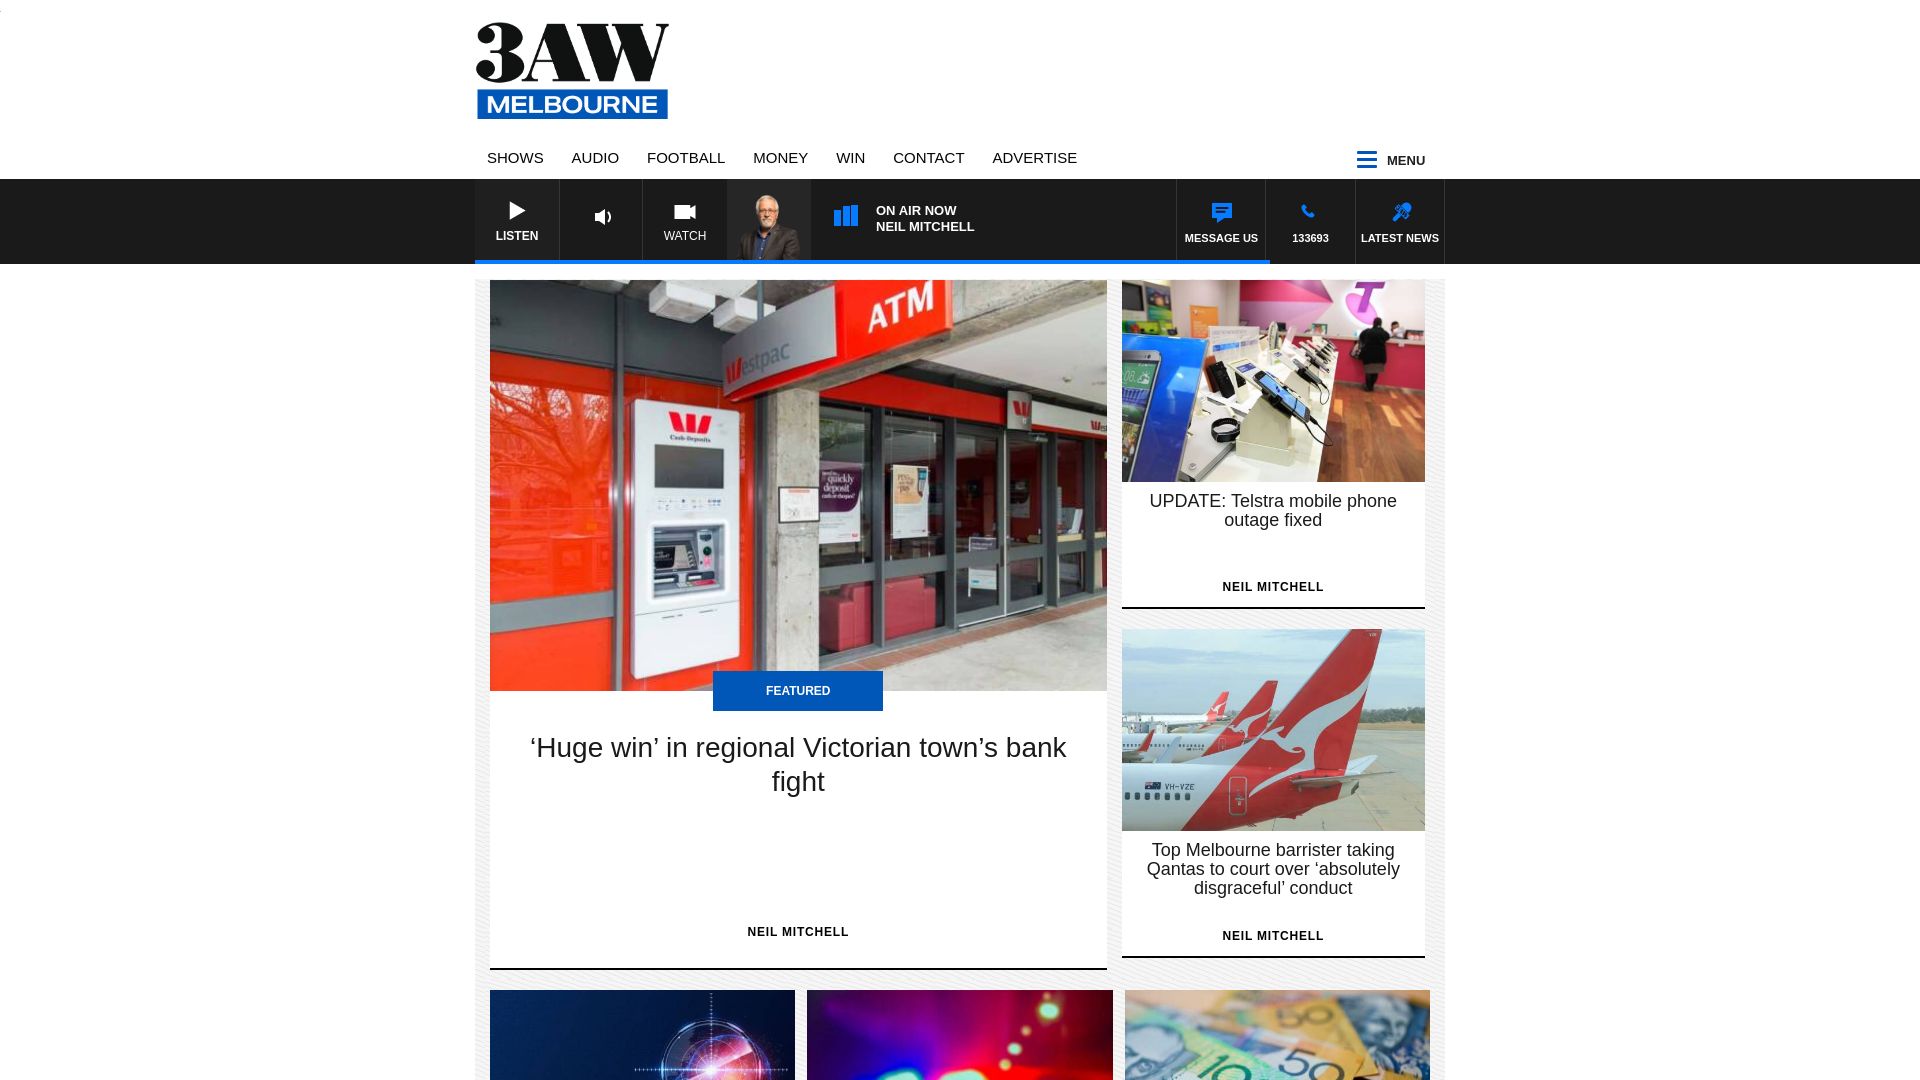 Stato del sito web 3aw.com.au è   ONLINE